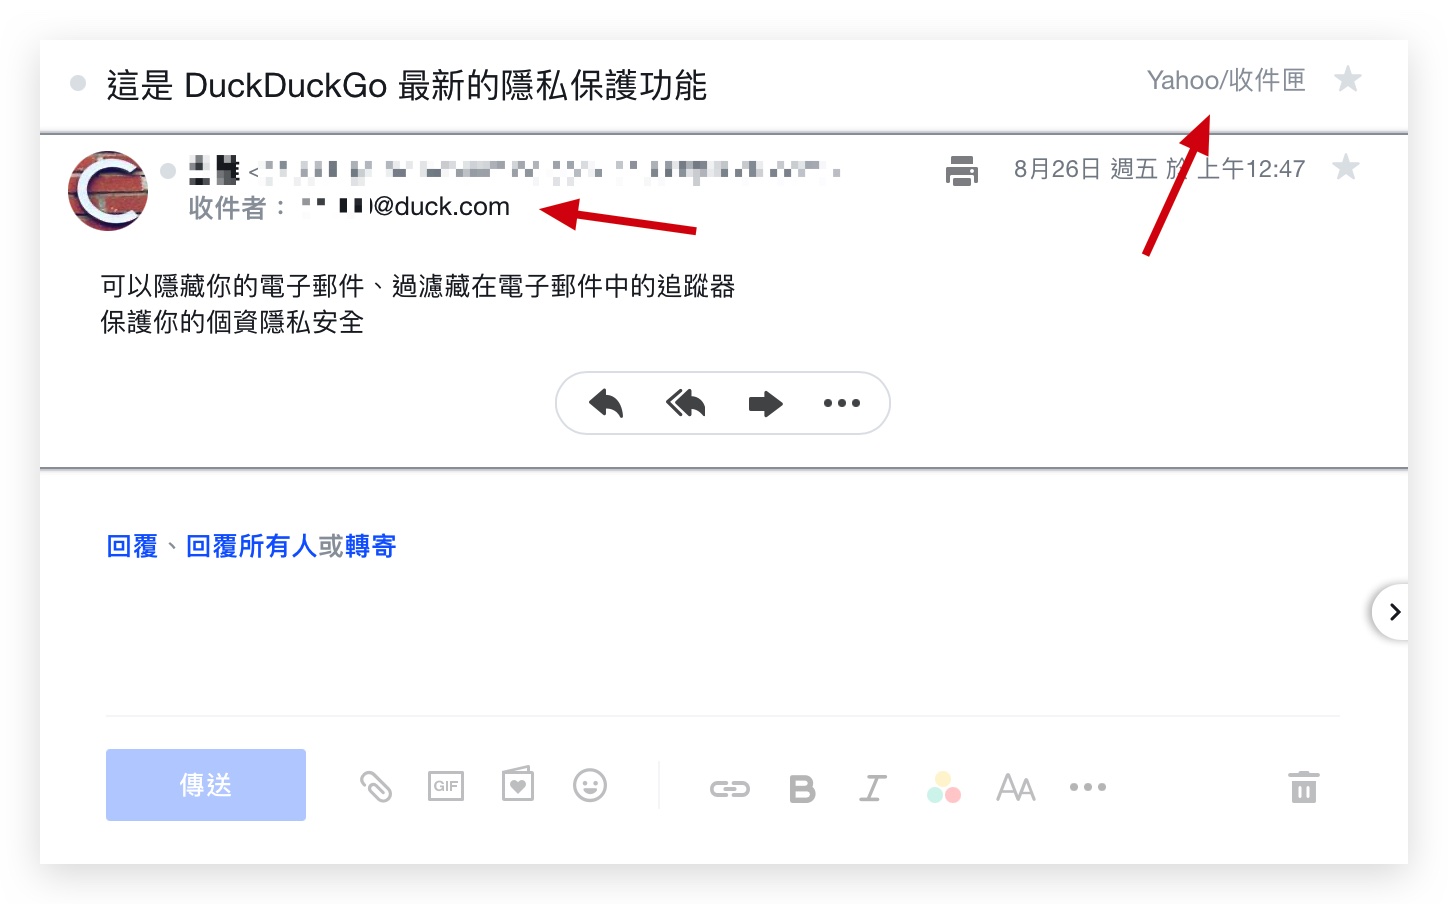 DuckDuckGo 隱私保護 Email 保護 隱藏我的電子郵件